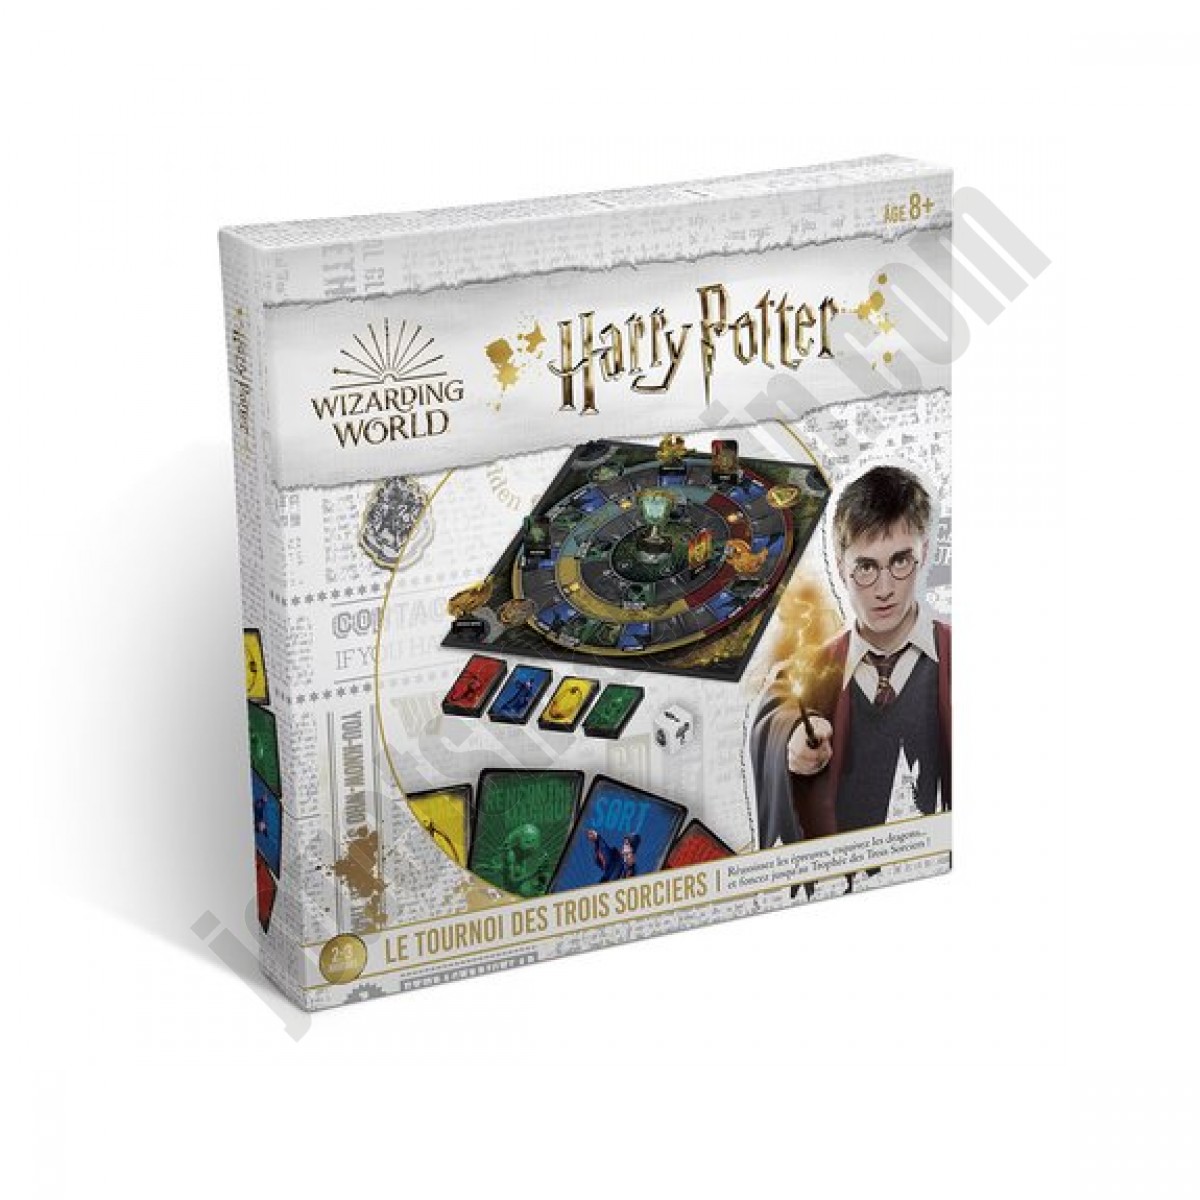 Harry Potter - Le tournoi des 3 sorciers ◆◆◆ Nouveau - Harry Potter - Le tournoi des 3 sorciers ◆◆◆ Nouveau